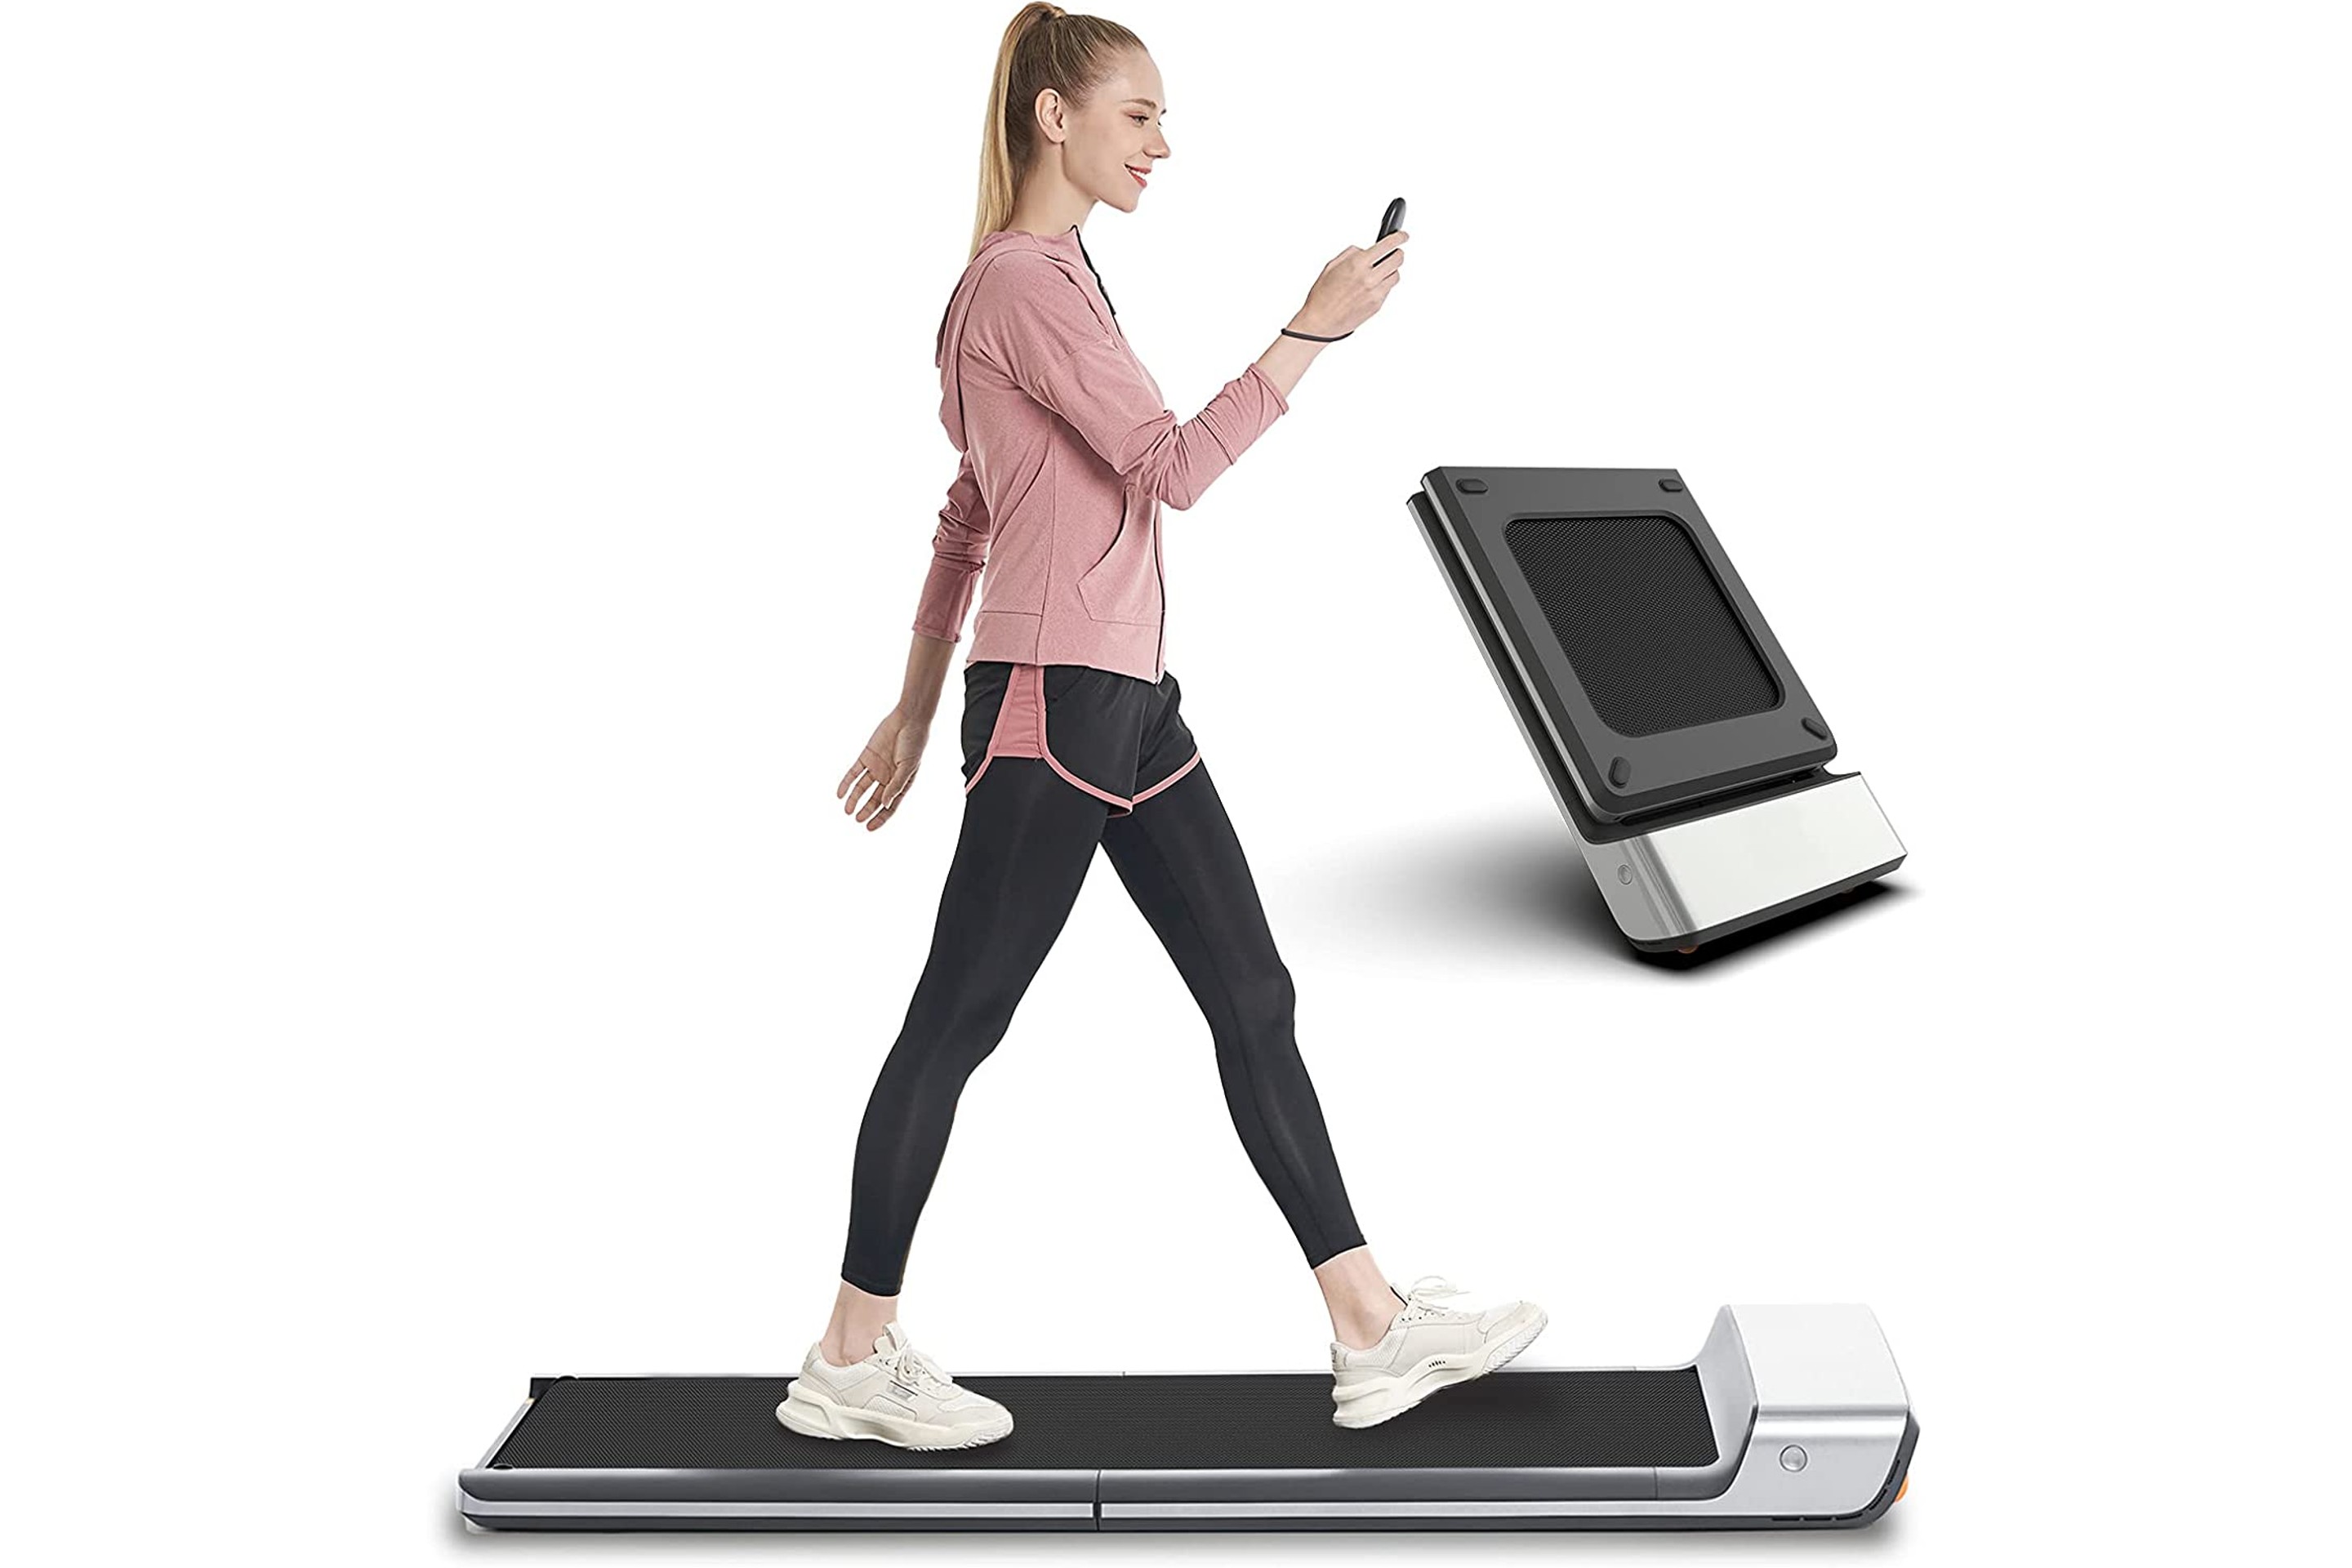 WalkingPad Folding Treadmill